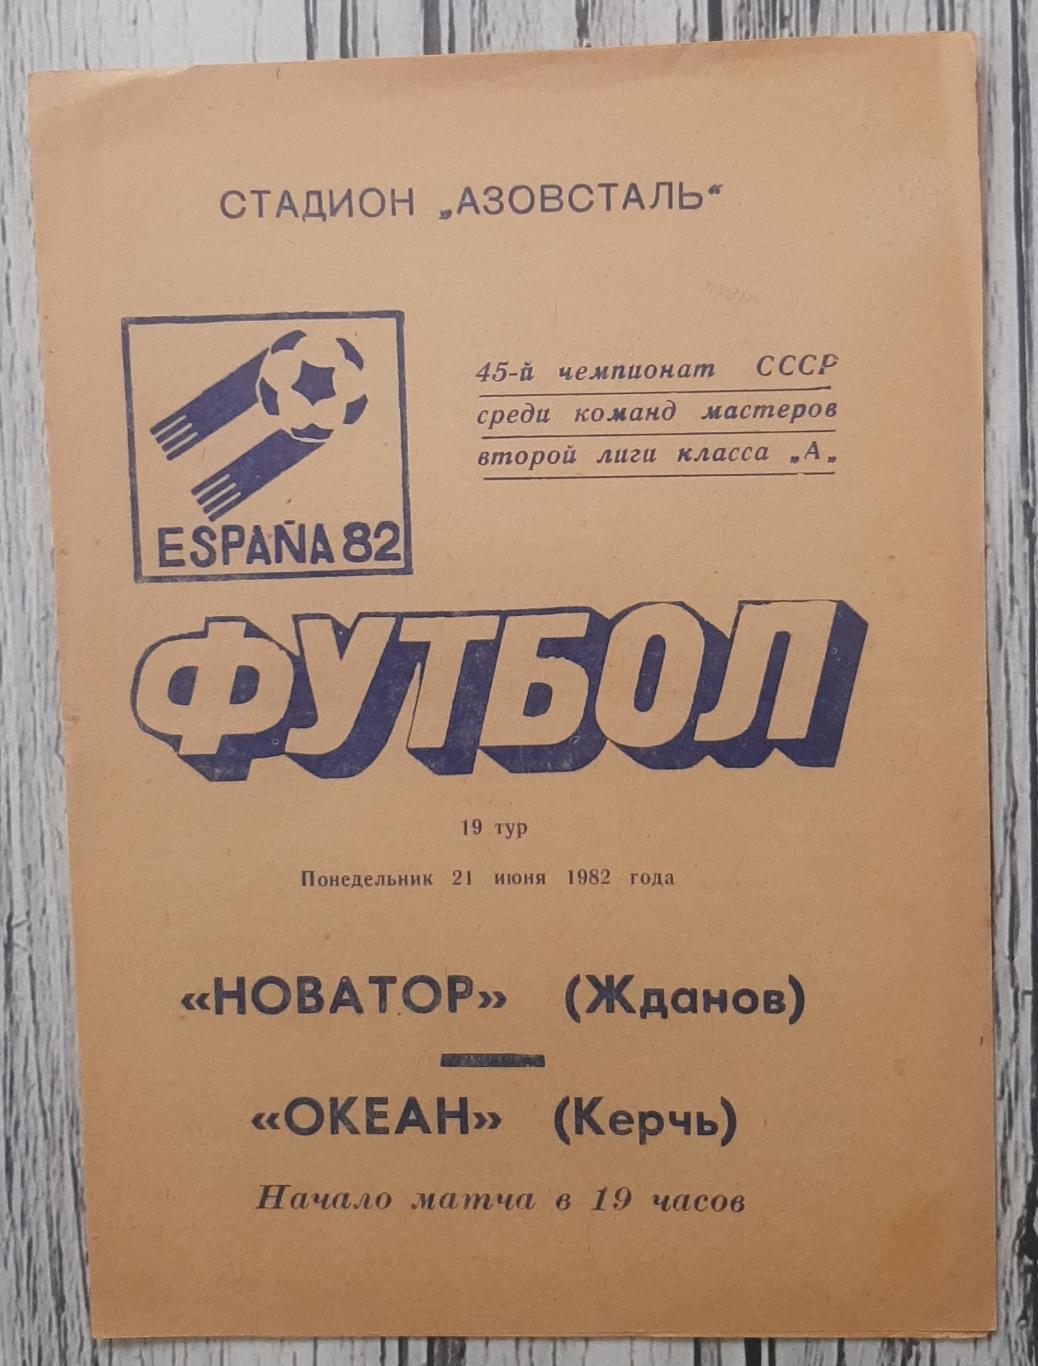 Новатор Жданов - Океан Керч 21.06.1982